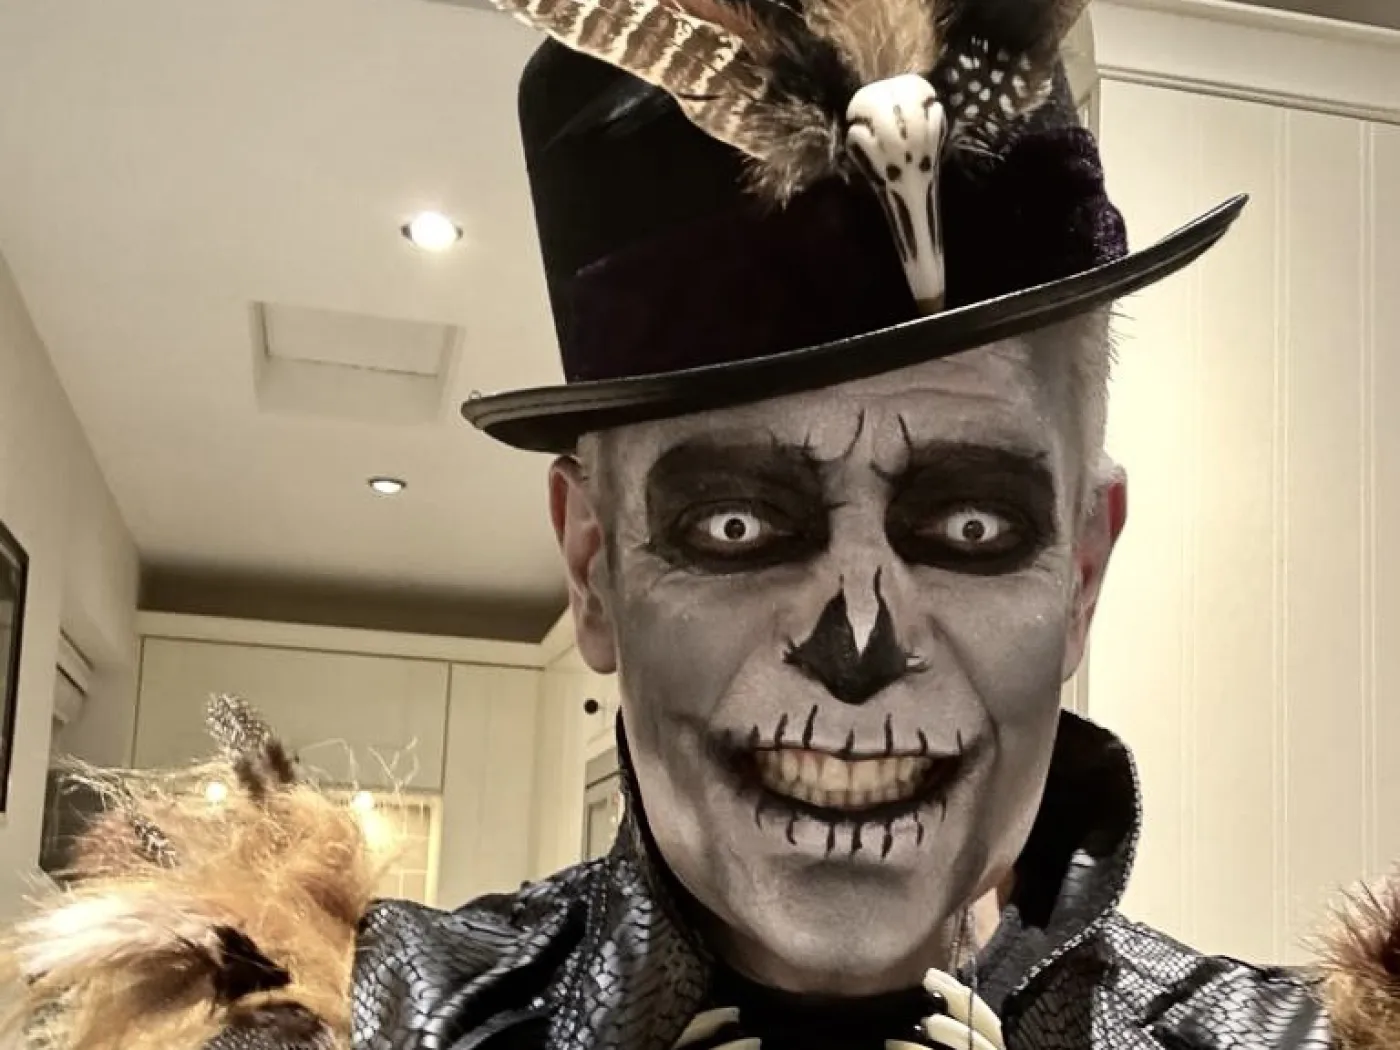 Voodoo Man makeup for Hallowe’en